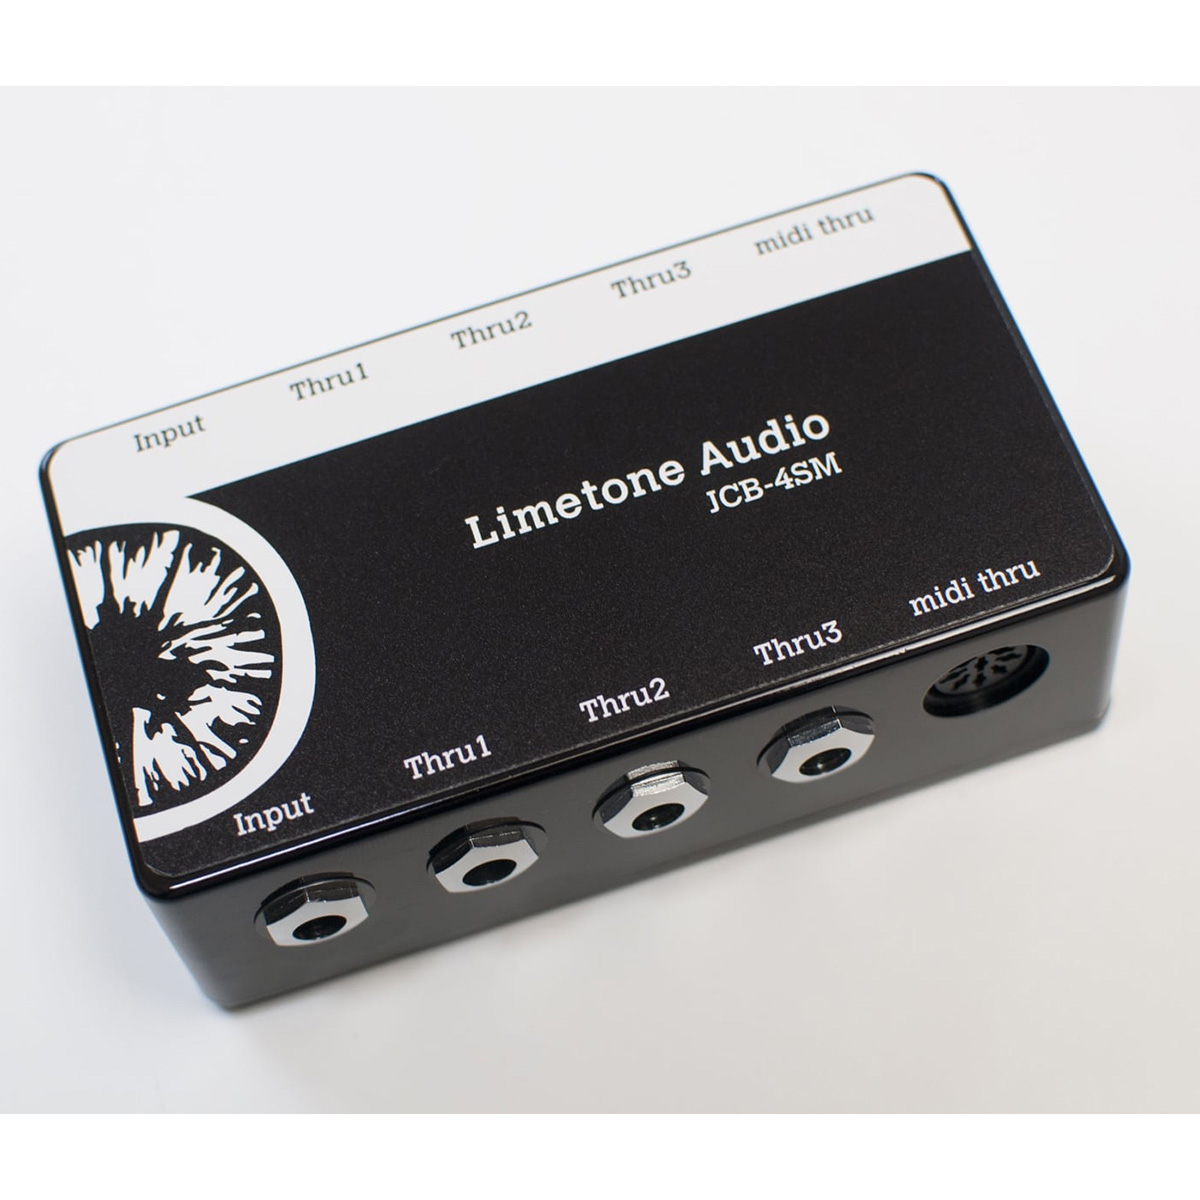 Limetone Audio JCB-4SM BLK ジャンクションボックス 【ライムトーンオーディオ】